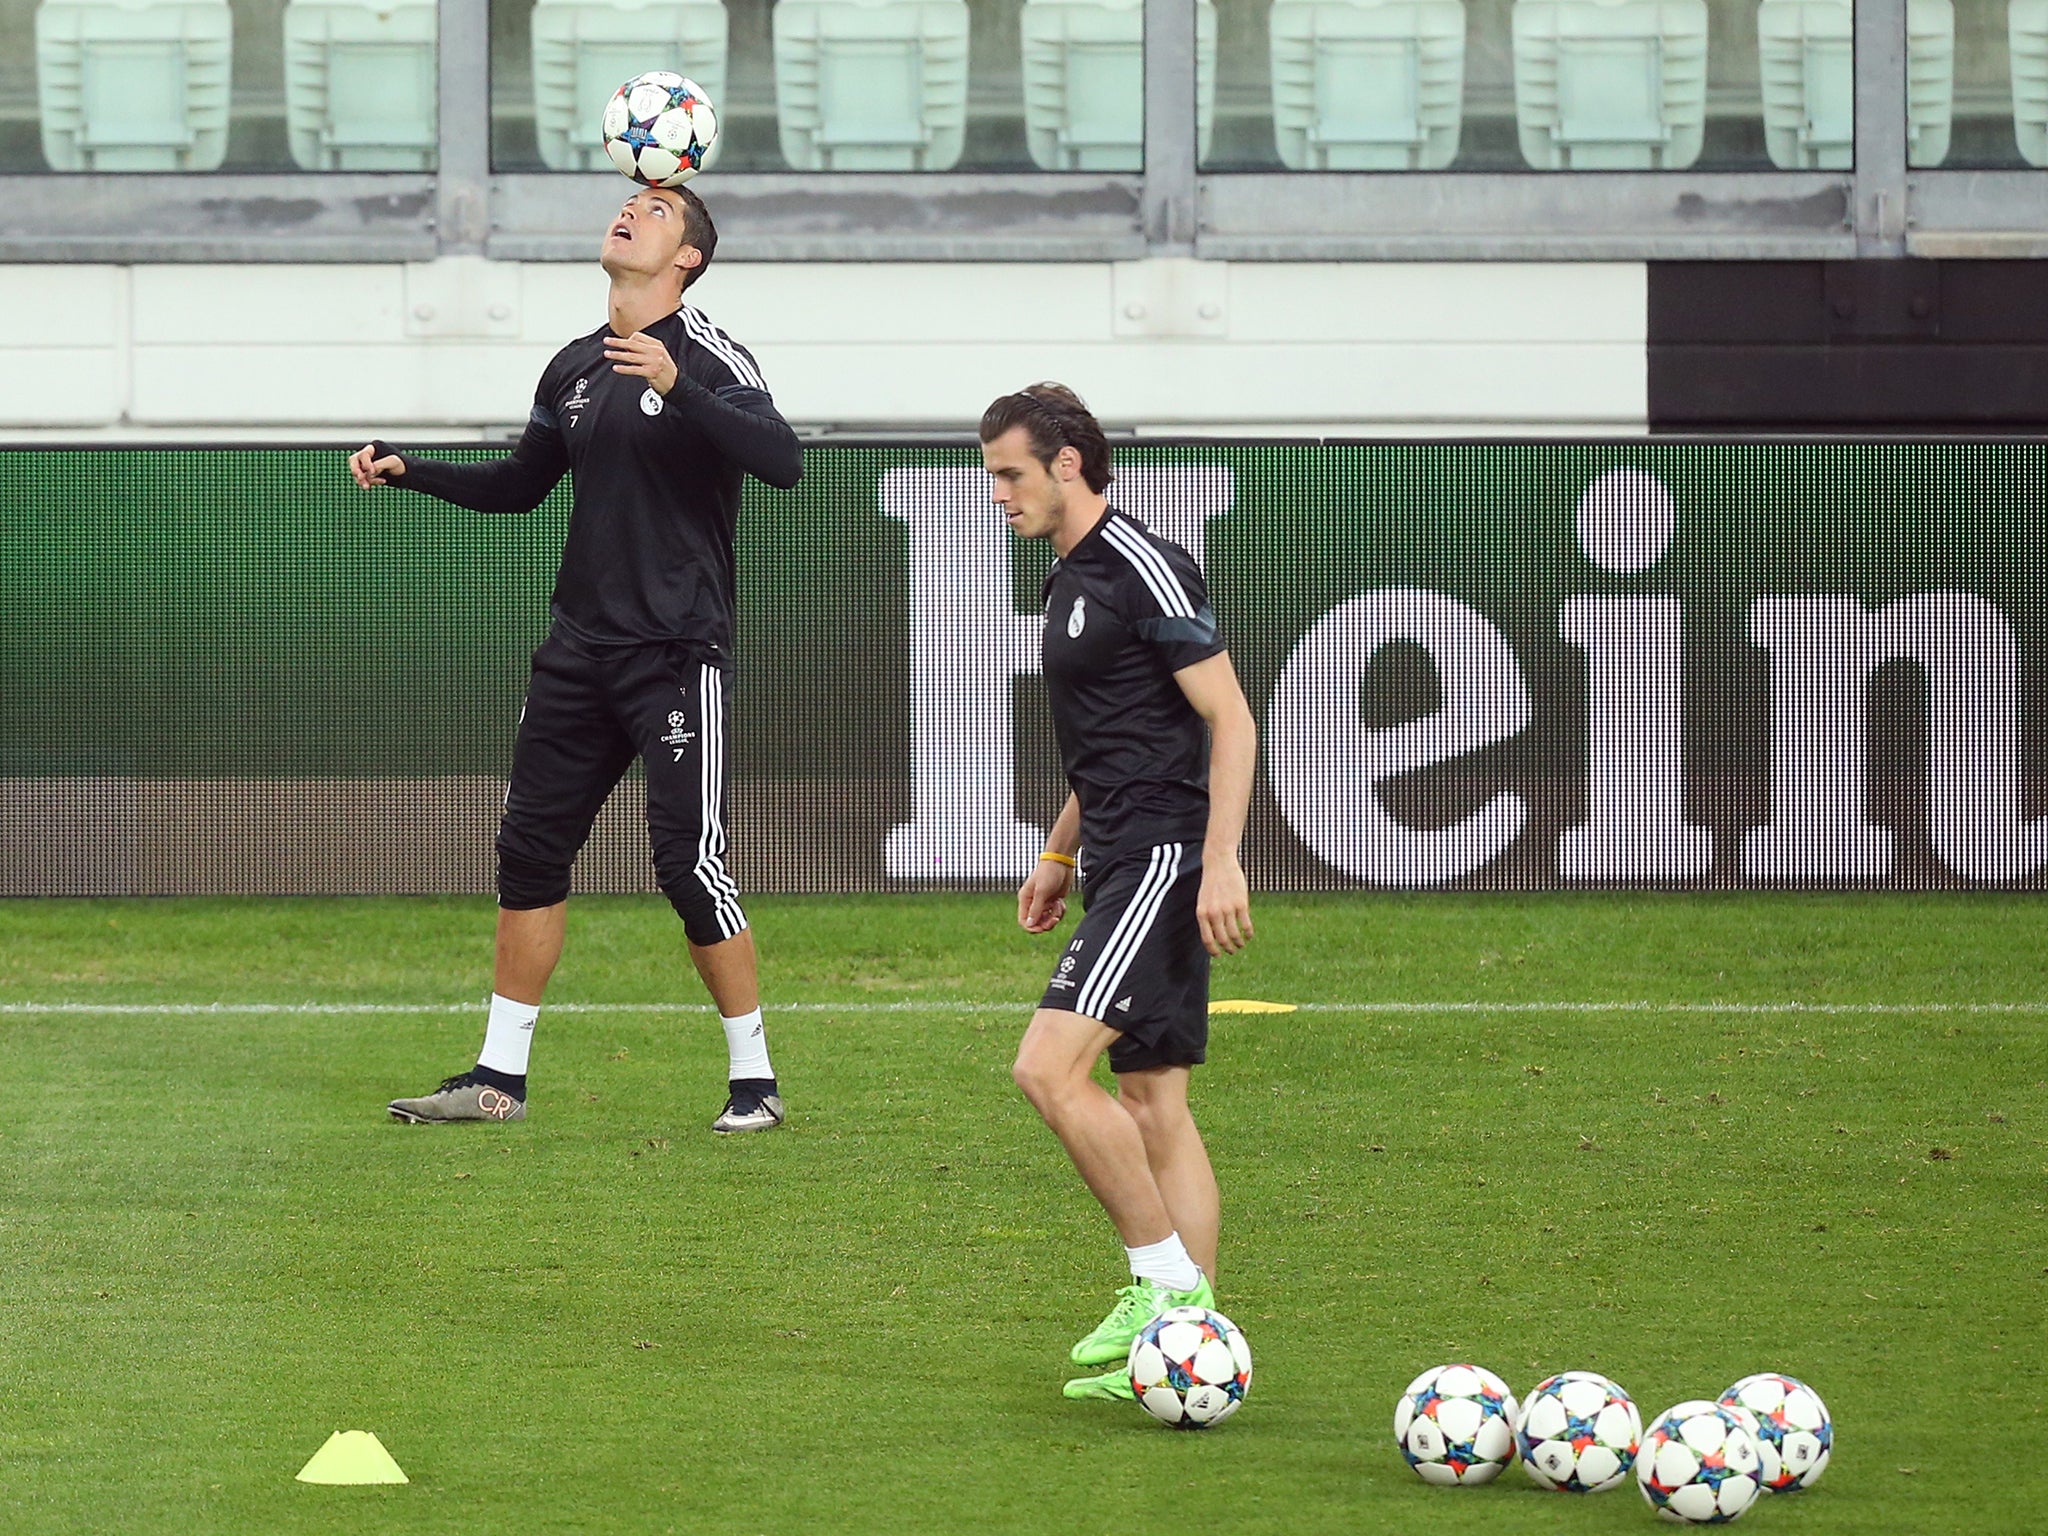 Gareth Bale trains with Cristiano Ronaldo